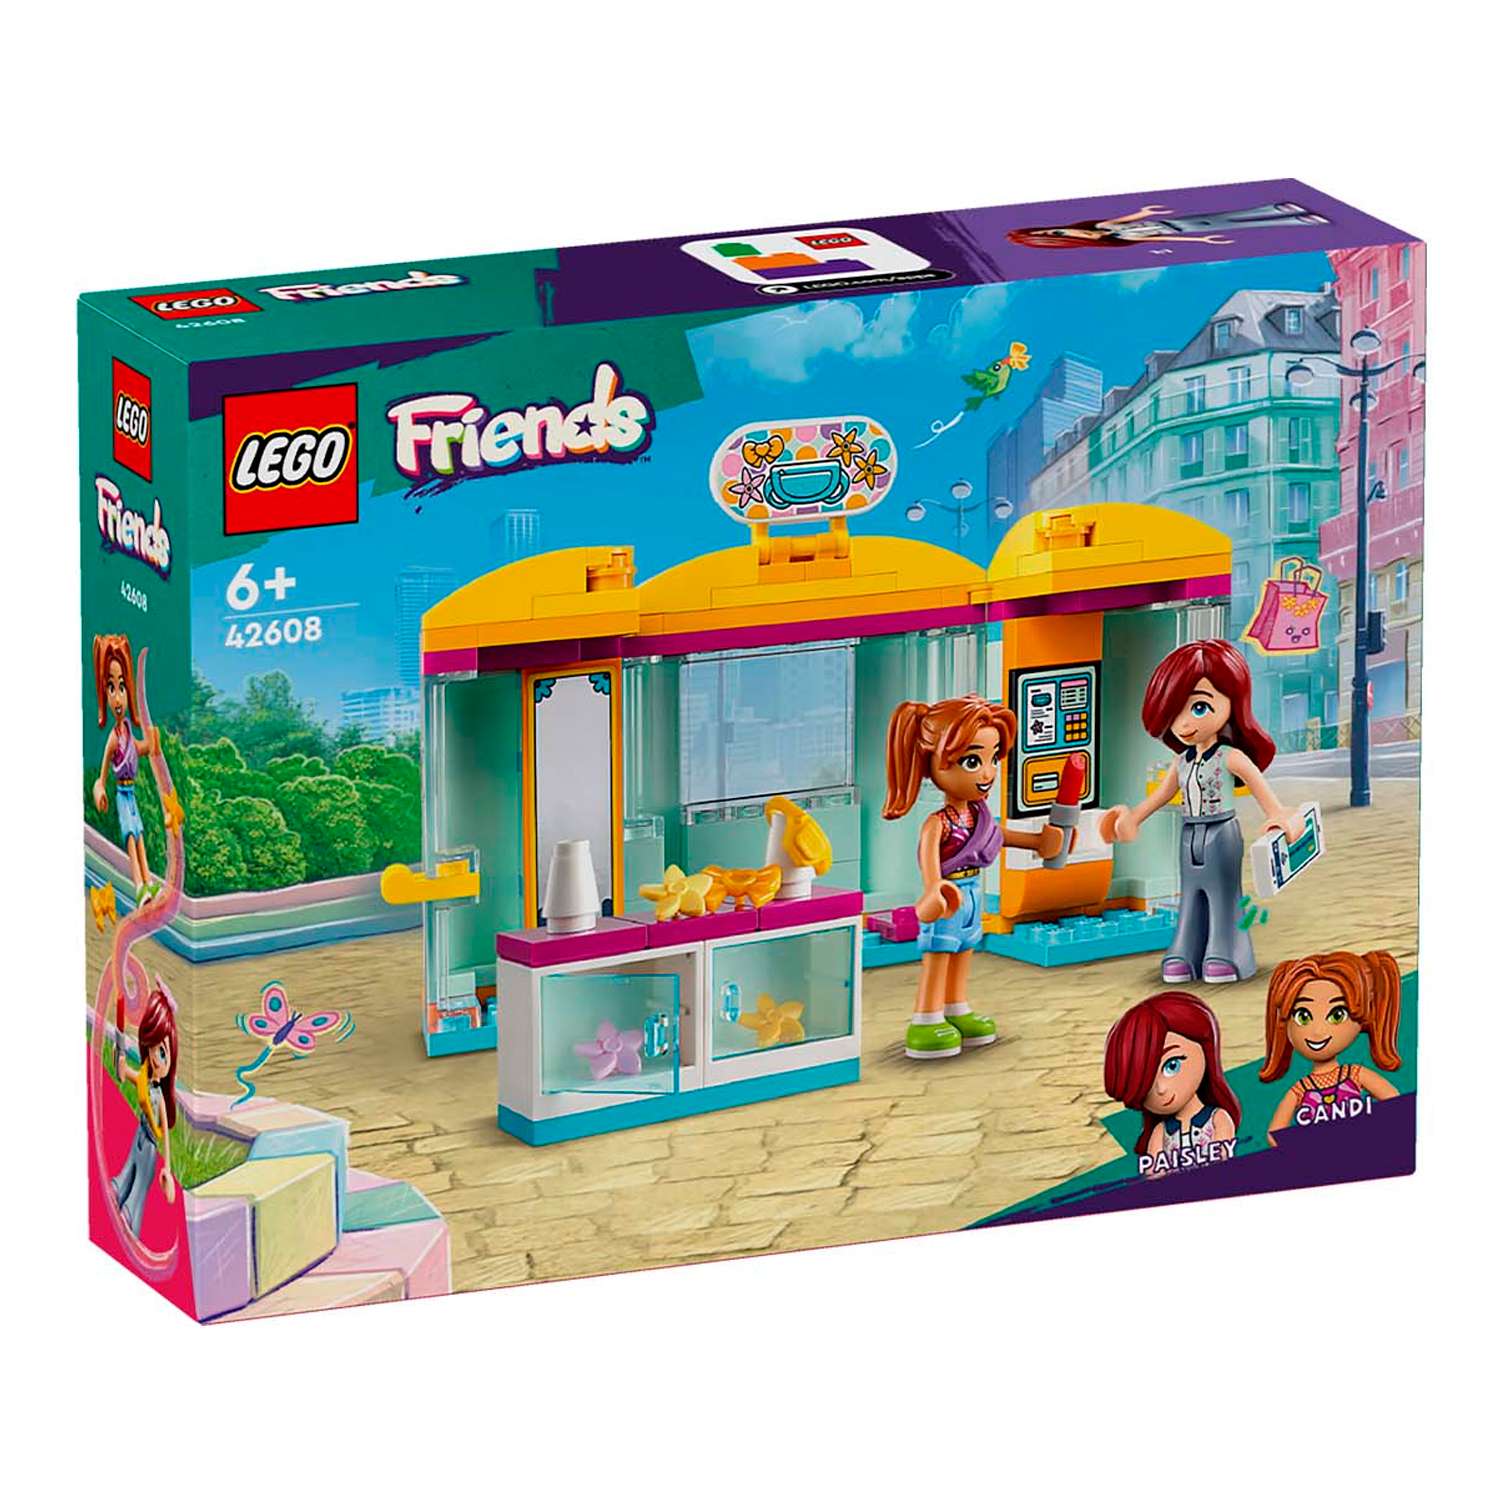 Конструктор детский LEGO Friends Магазин аксессуаров 42608 - фото 4